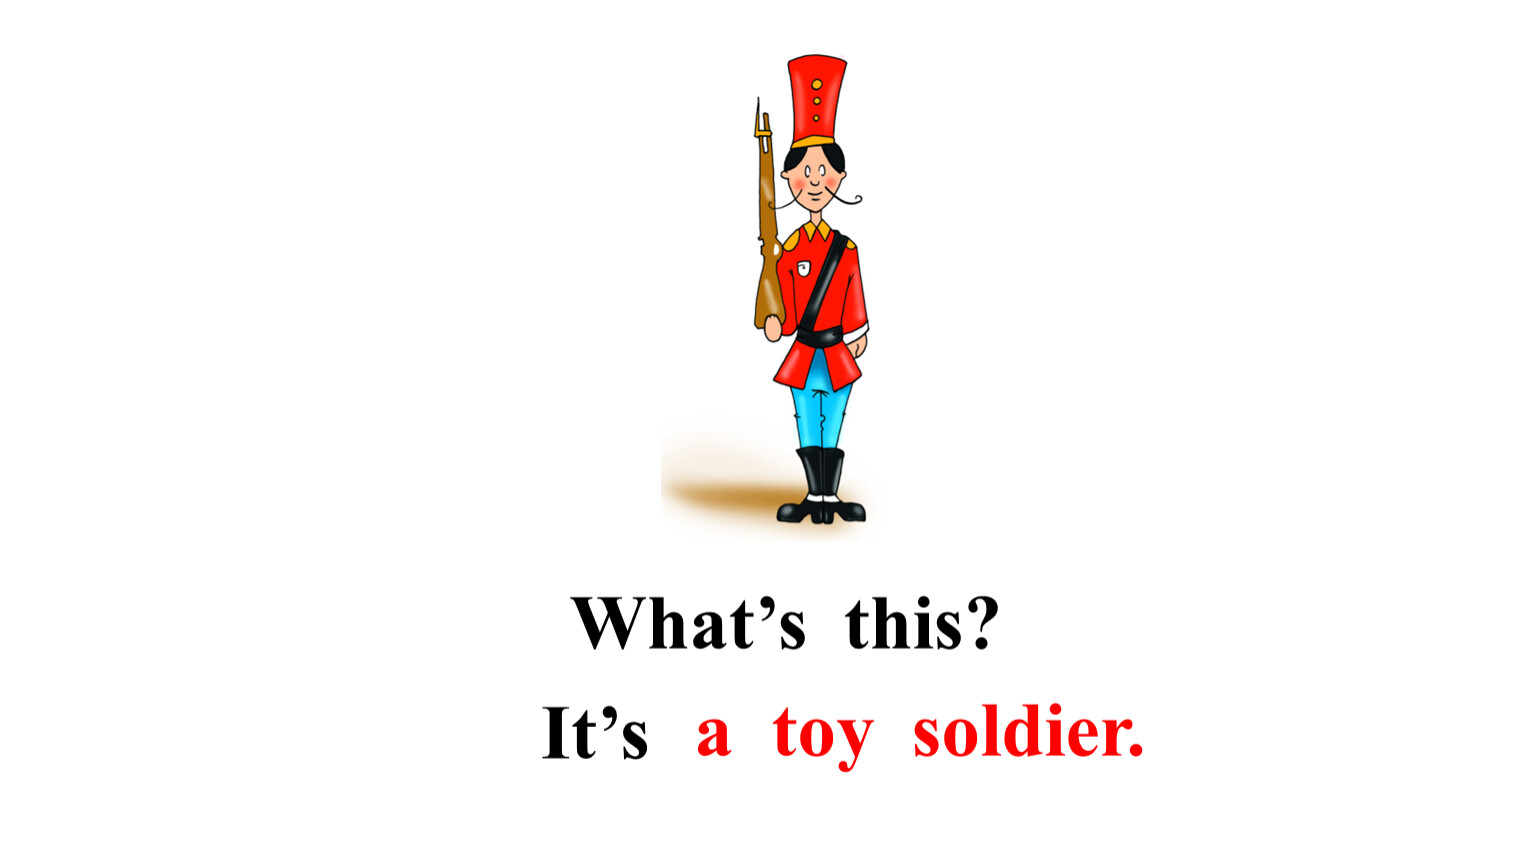 Toy Soldier спотлайт. My Toys Spotlight 2 класс презентация. Спотлайт 2 my Toys. My Toys 2 класс спотлайт Toy Soldier. Is the toy soldier in the box